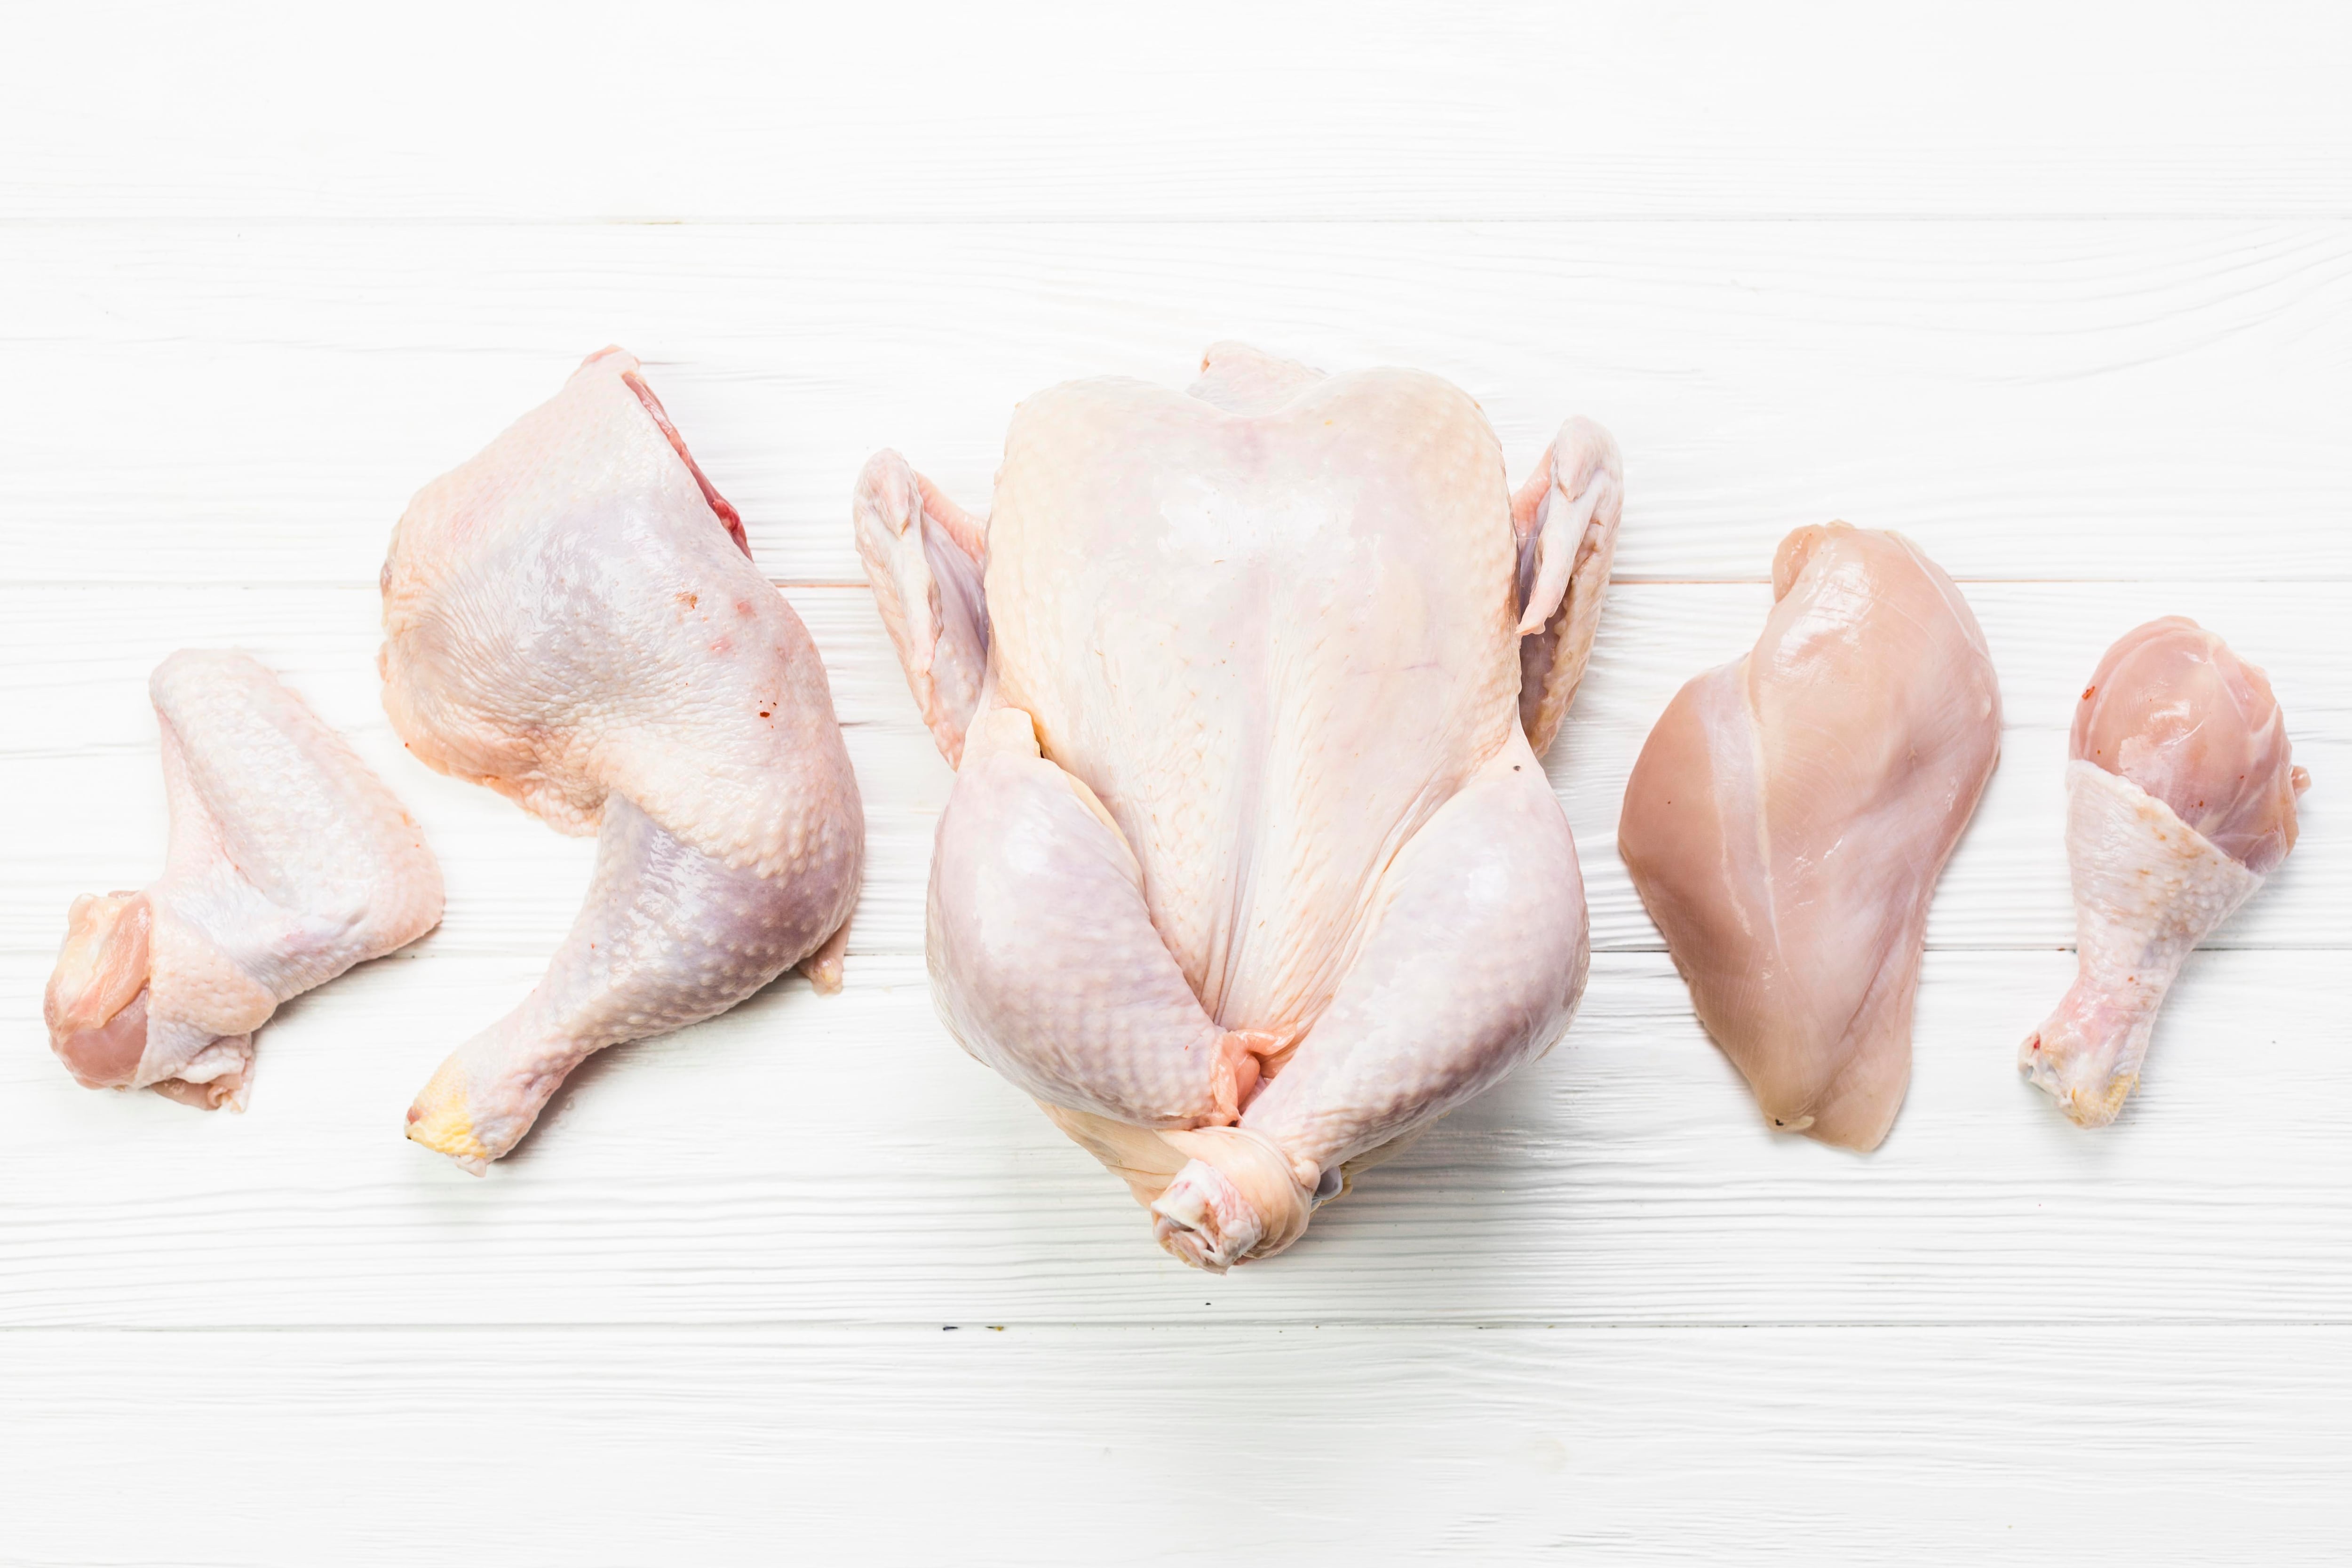 Beneficios de comer retazos de pollo - El Nuevo Día